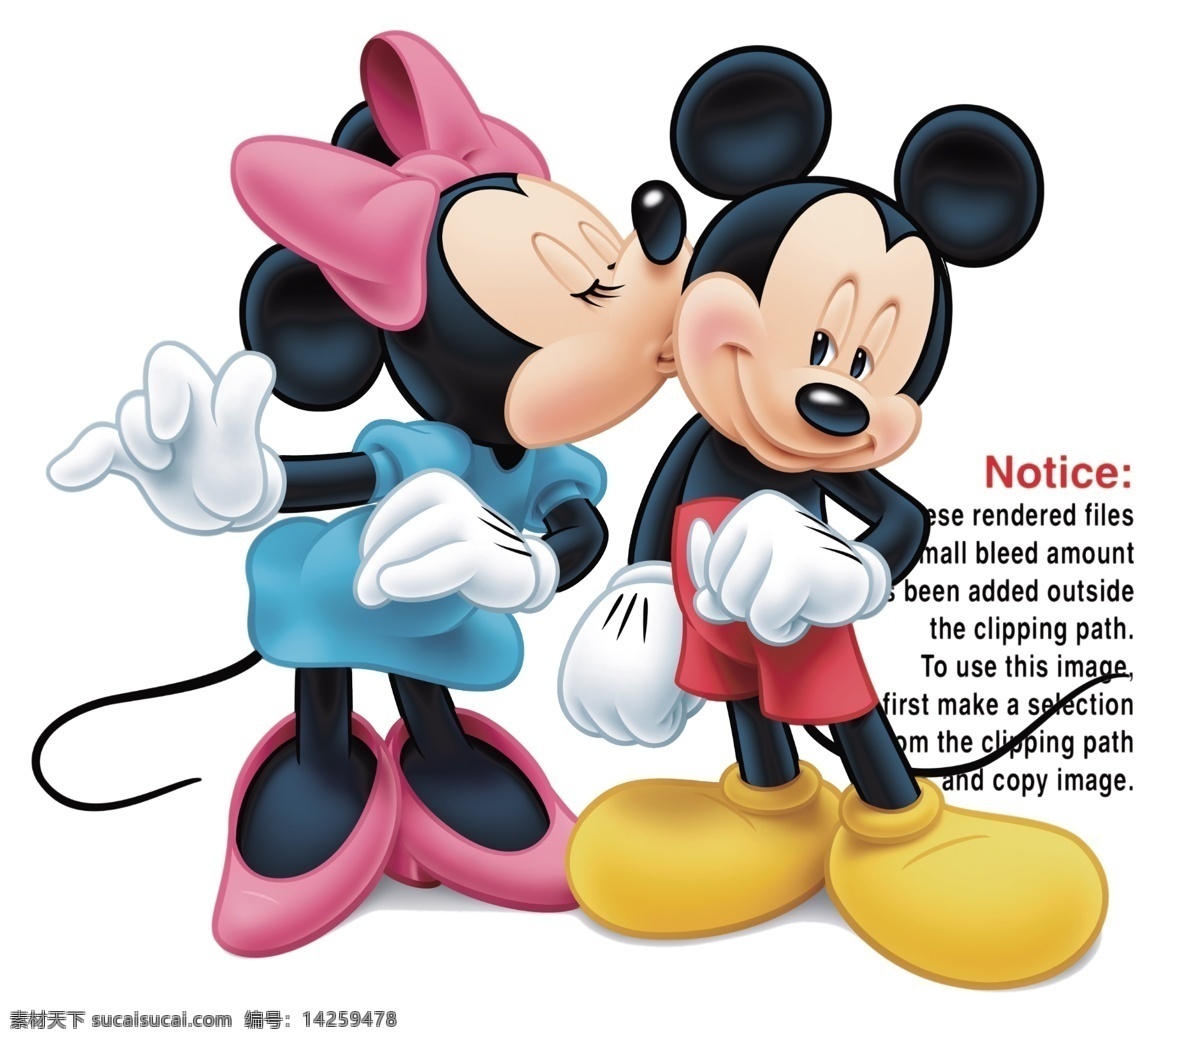 亲吻 米奇 米妮 卡通形象 迪士尼动画 卡通动物 卡通人物 其它模板 广告设计模板 psd素材 白色